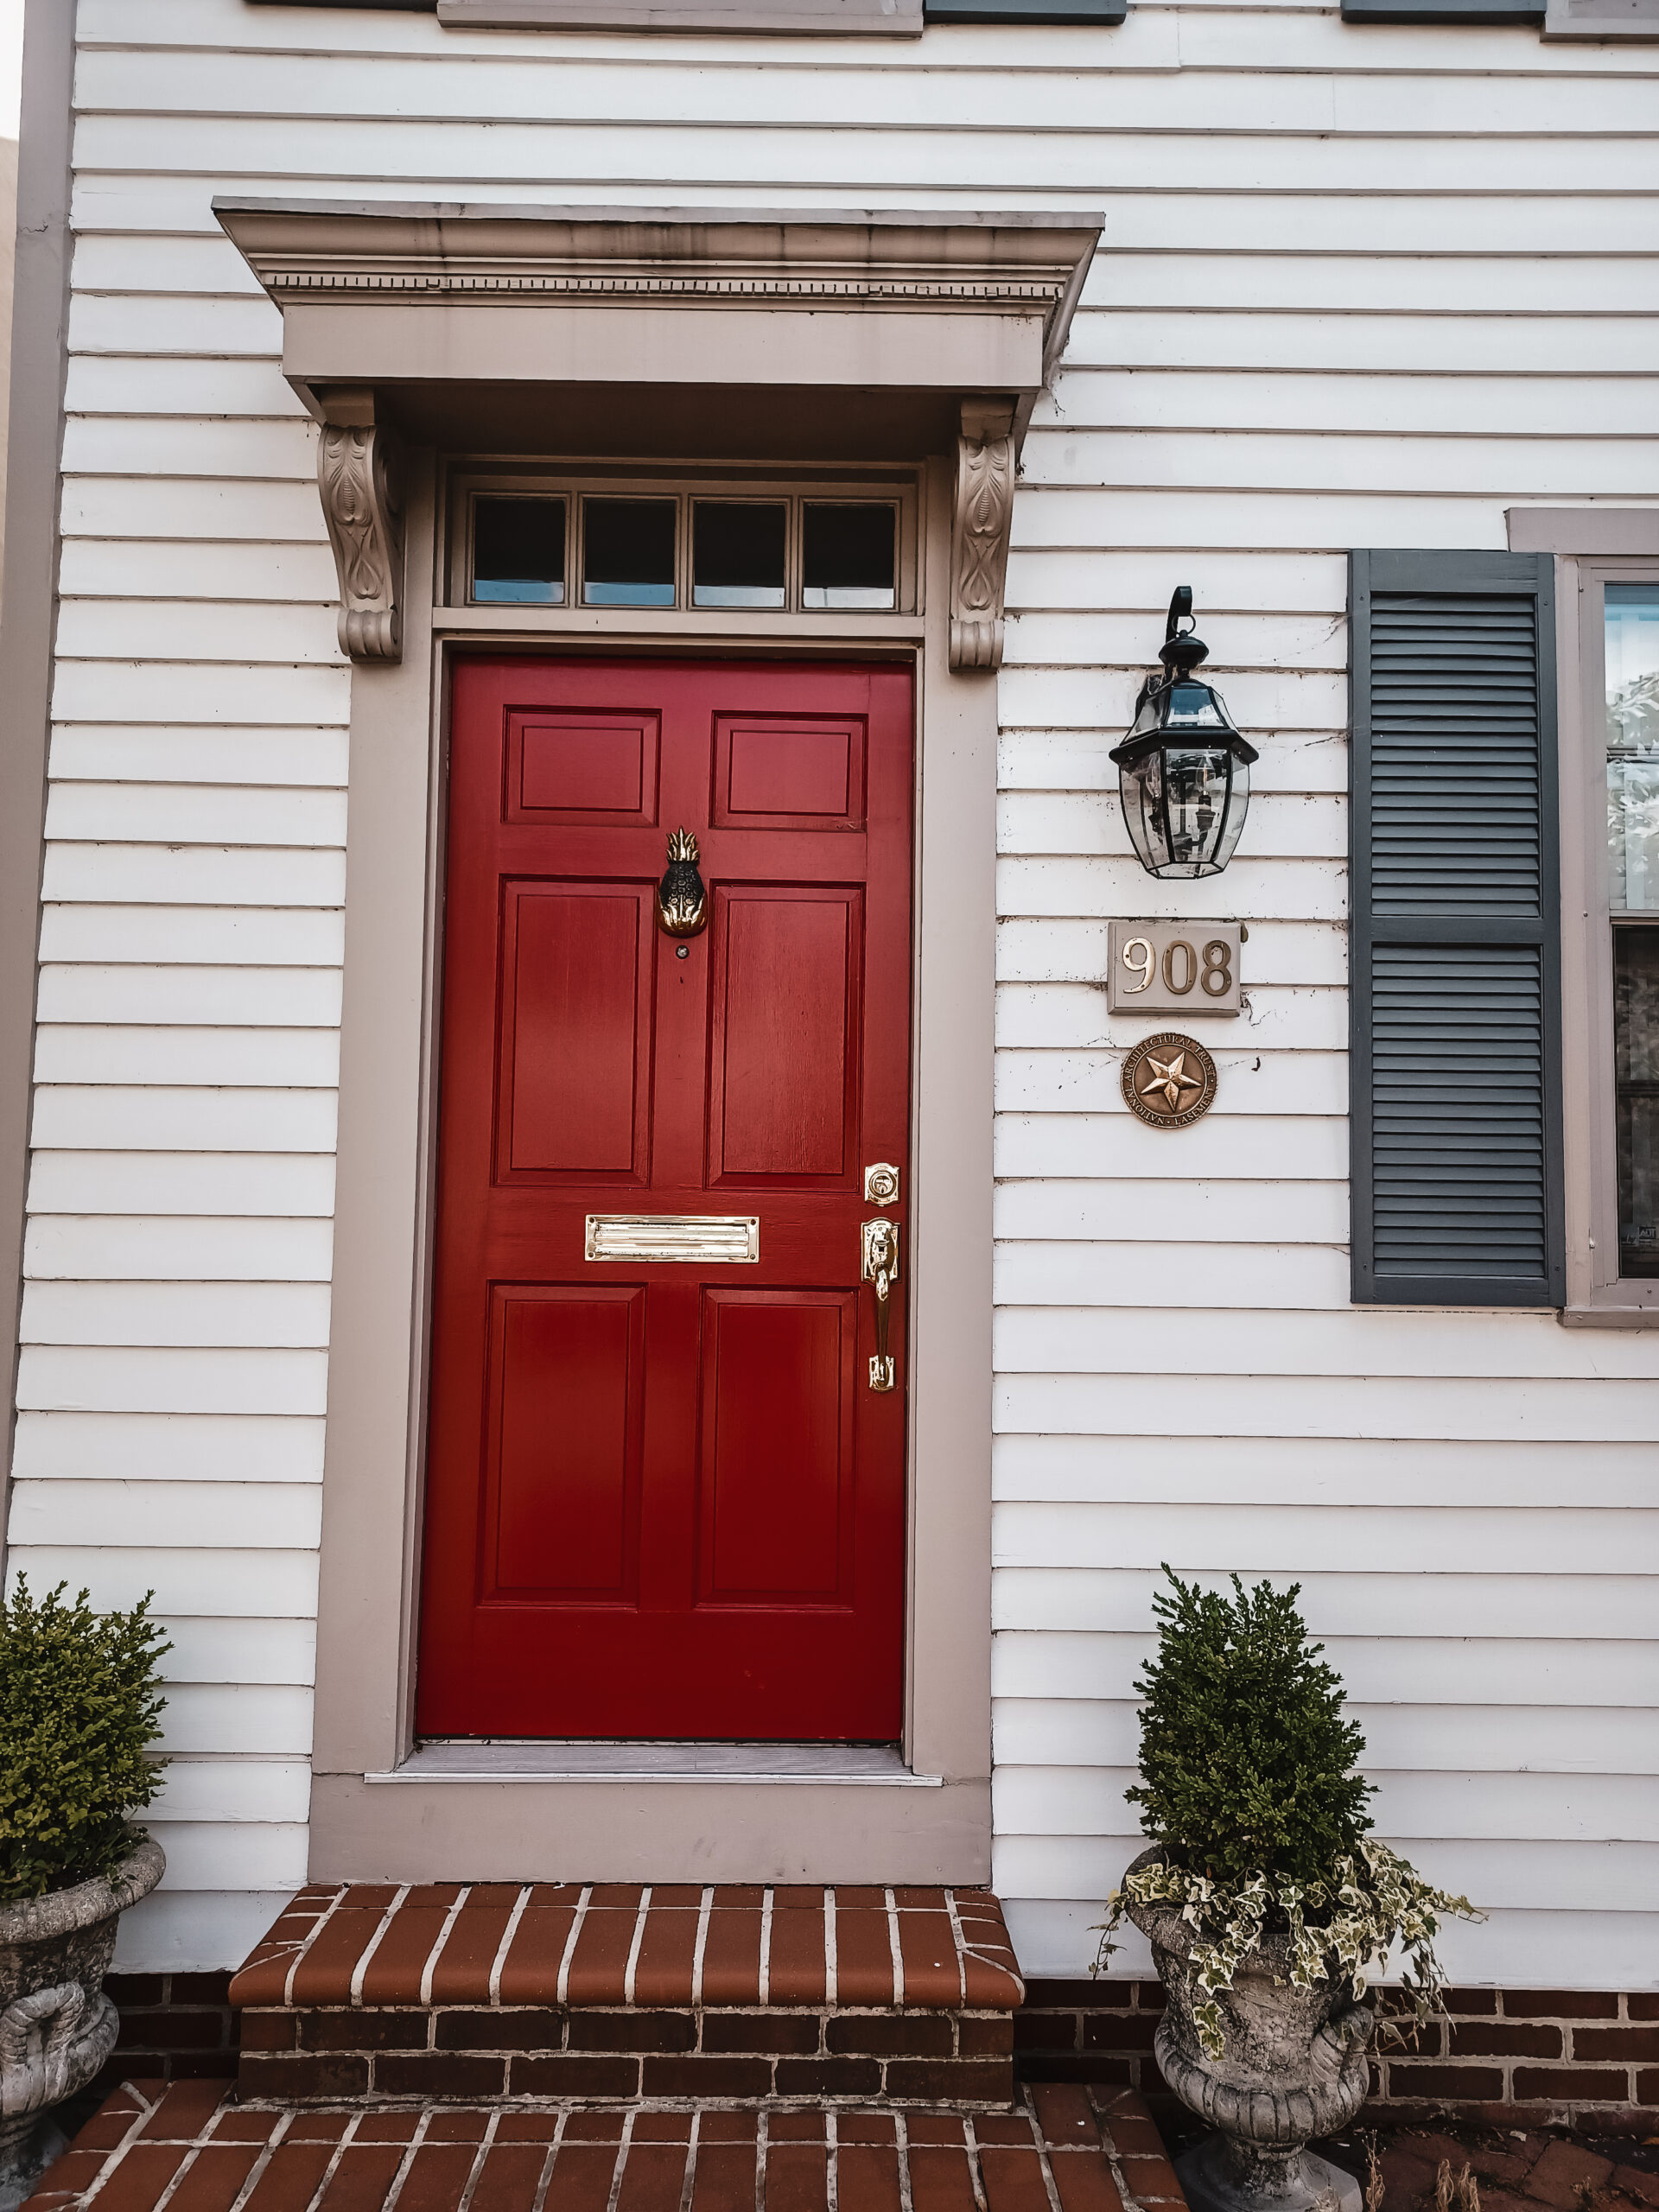 Alexandria Virginia home with red door